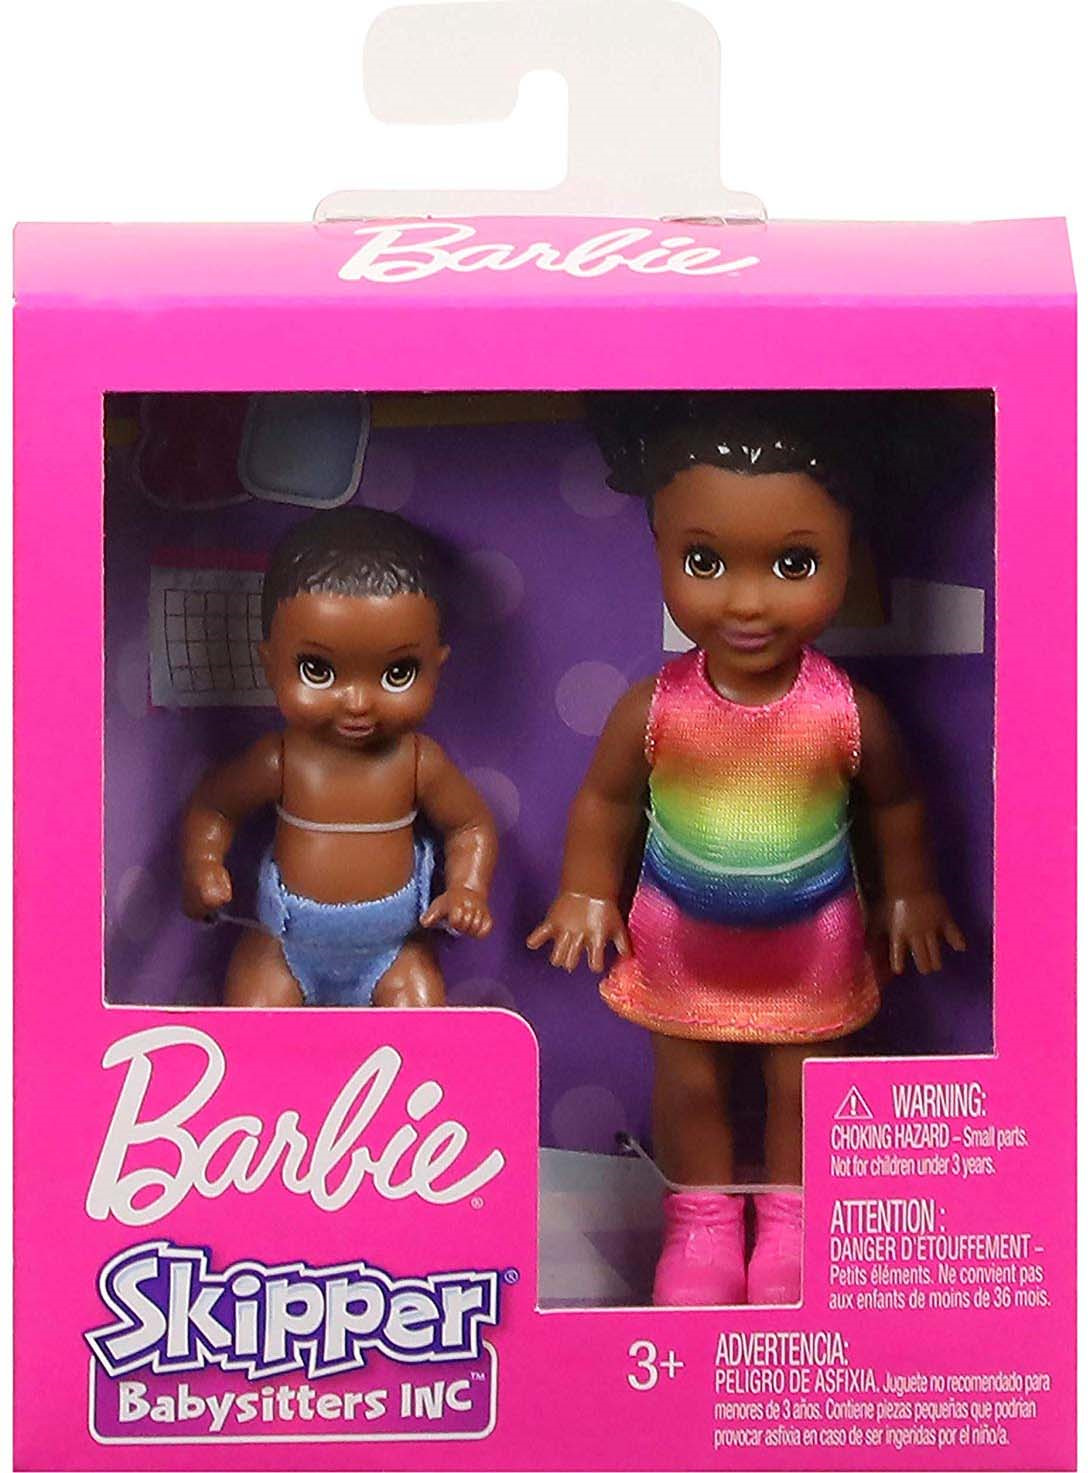 Barbie brat